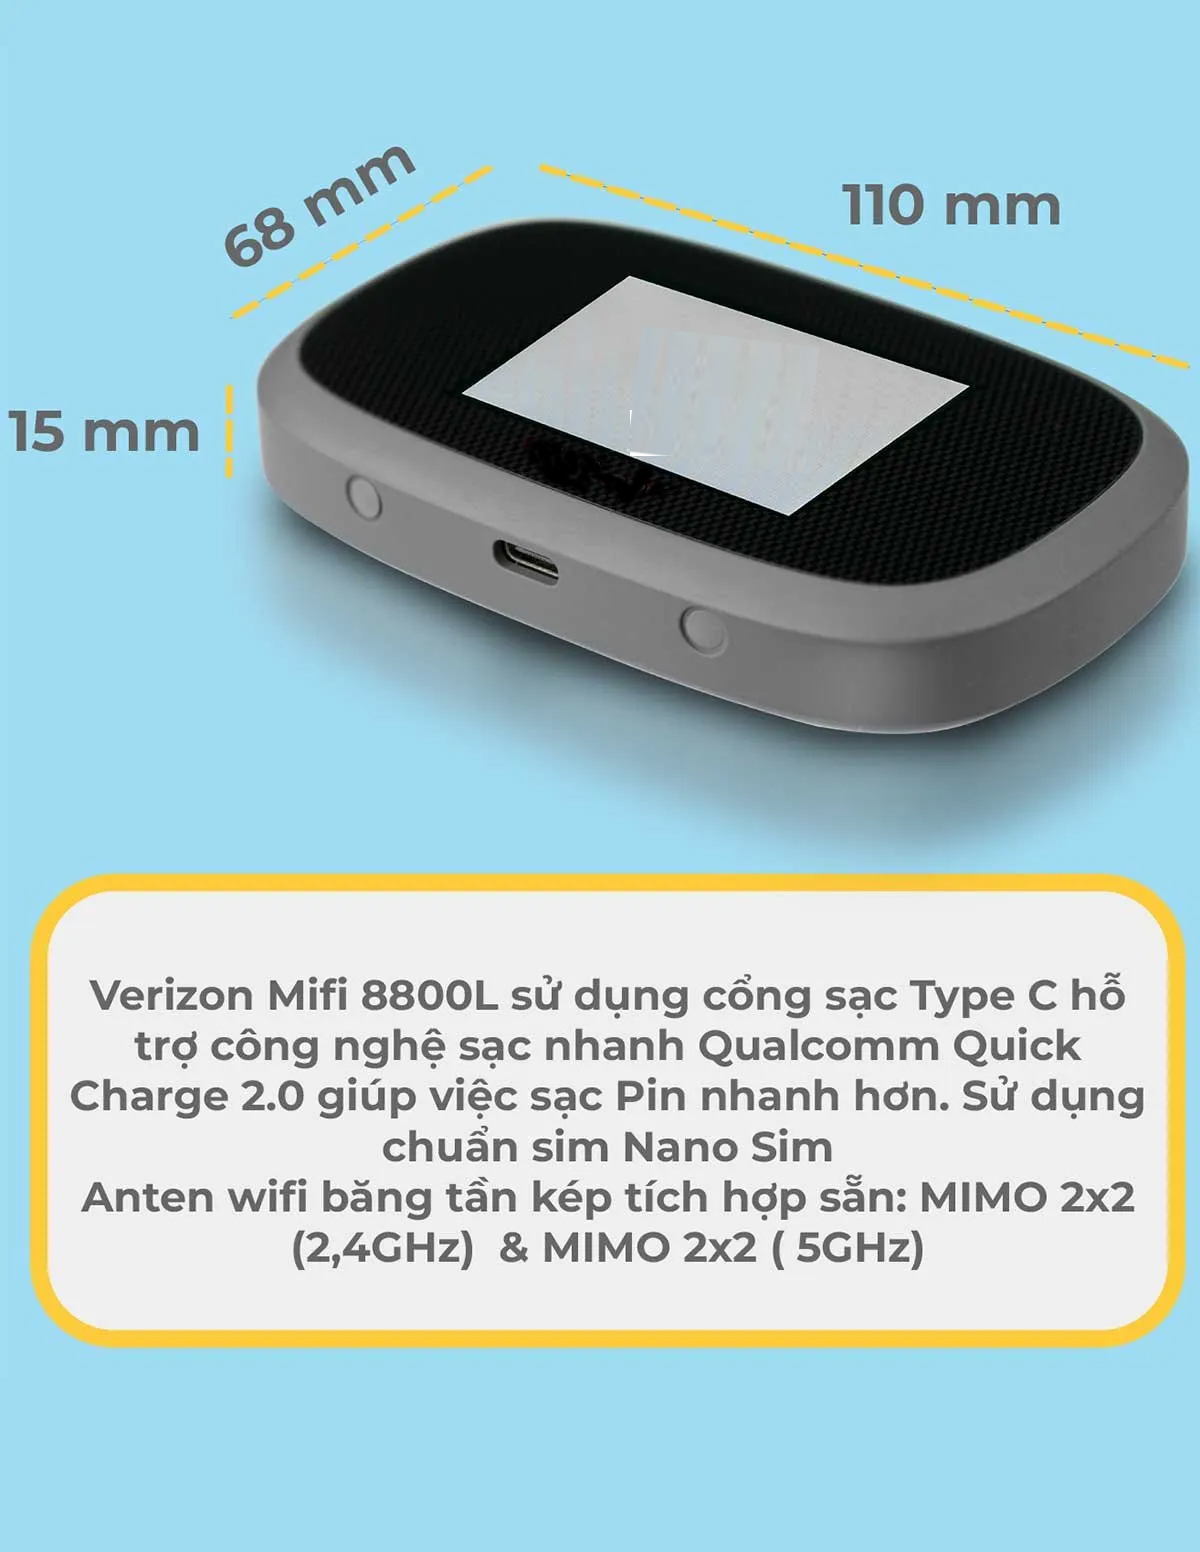 Bộ Phát Wifi Cầm Tay Verizon Mifi 8800L Băng Tần Kép 2,4Ghz và 5Ghz Pin 4400mah + Tặng 2 ăng ten TS9 EDUP hàng nhập khẩu